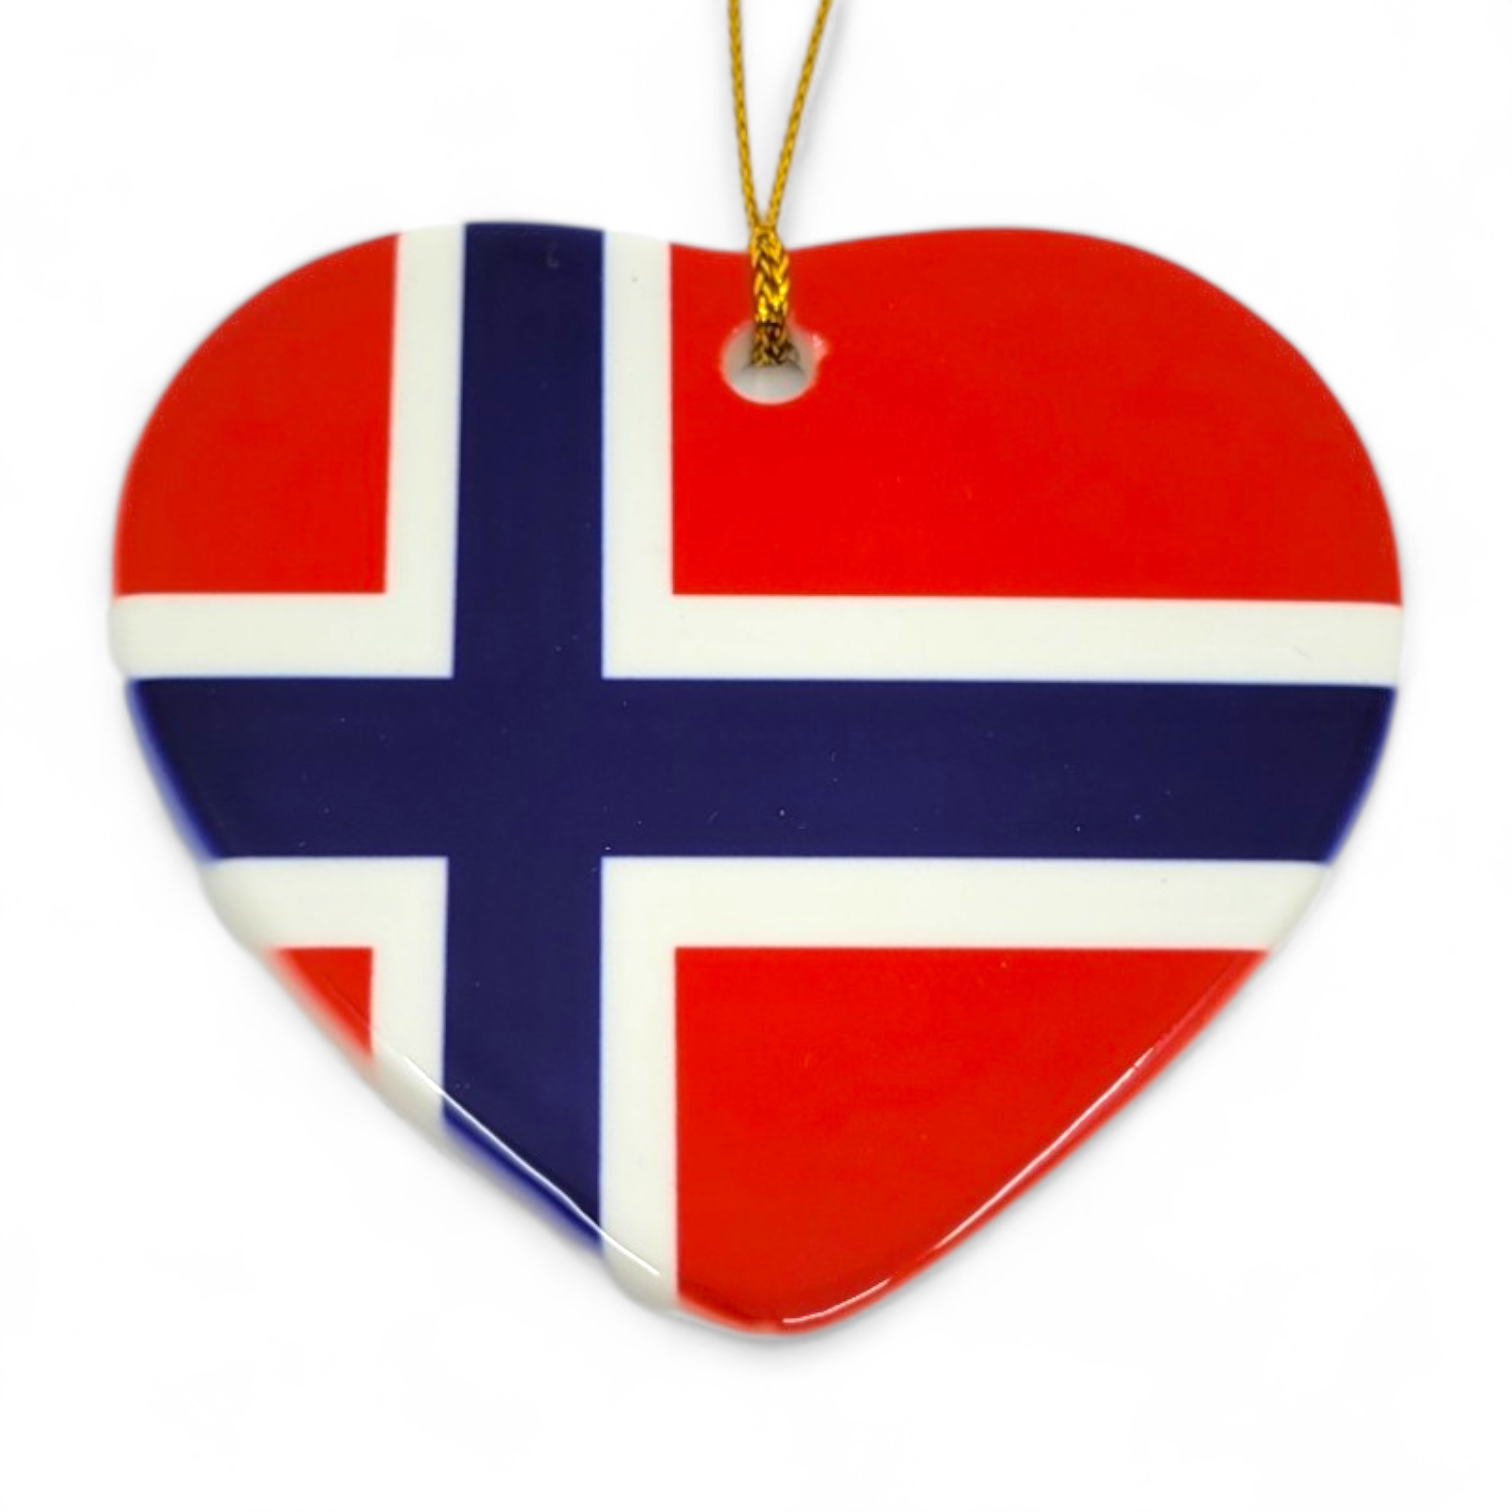 Ornament: 3" Heart Shaped Norwegian Flag